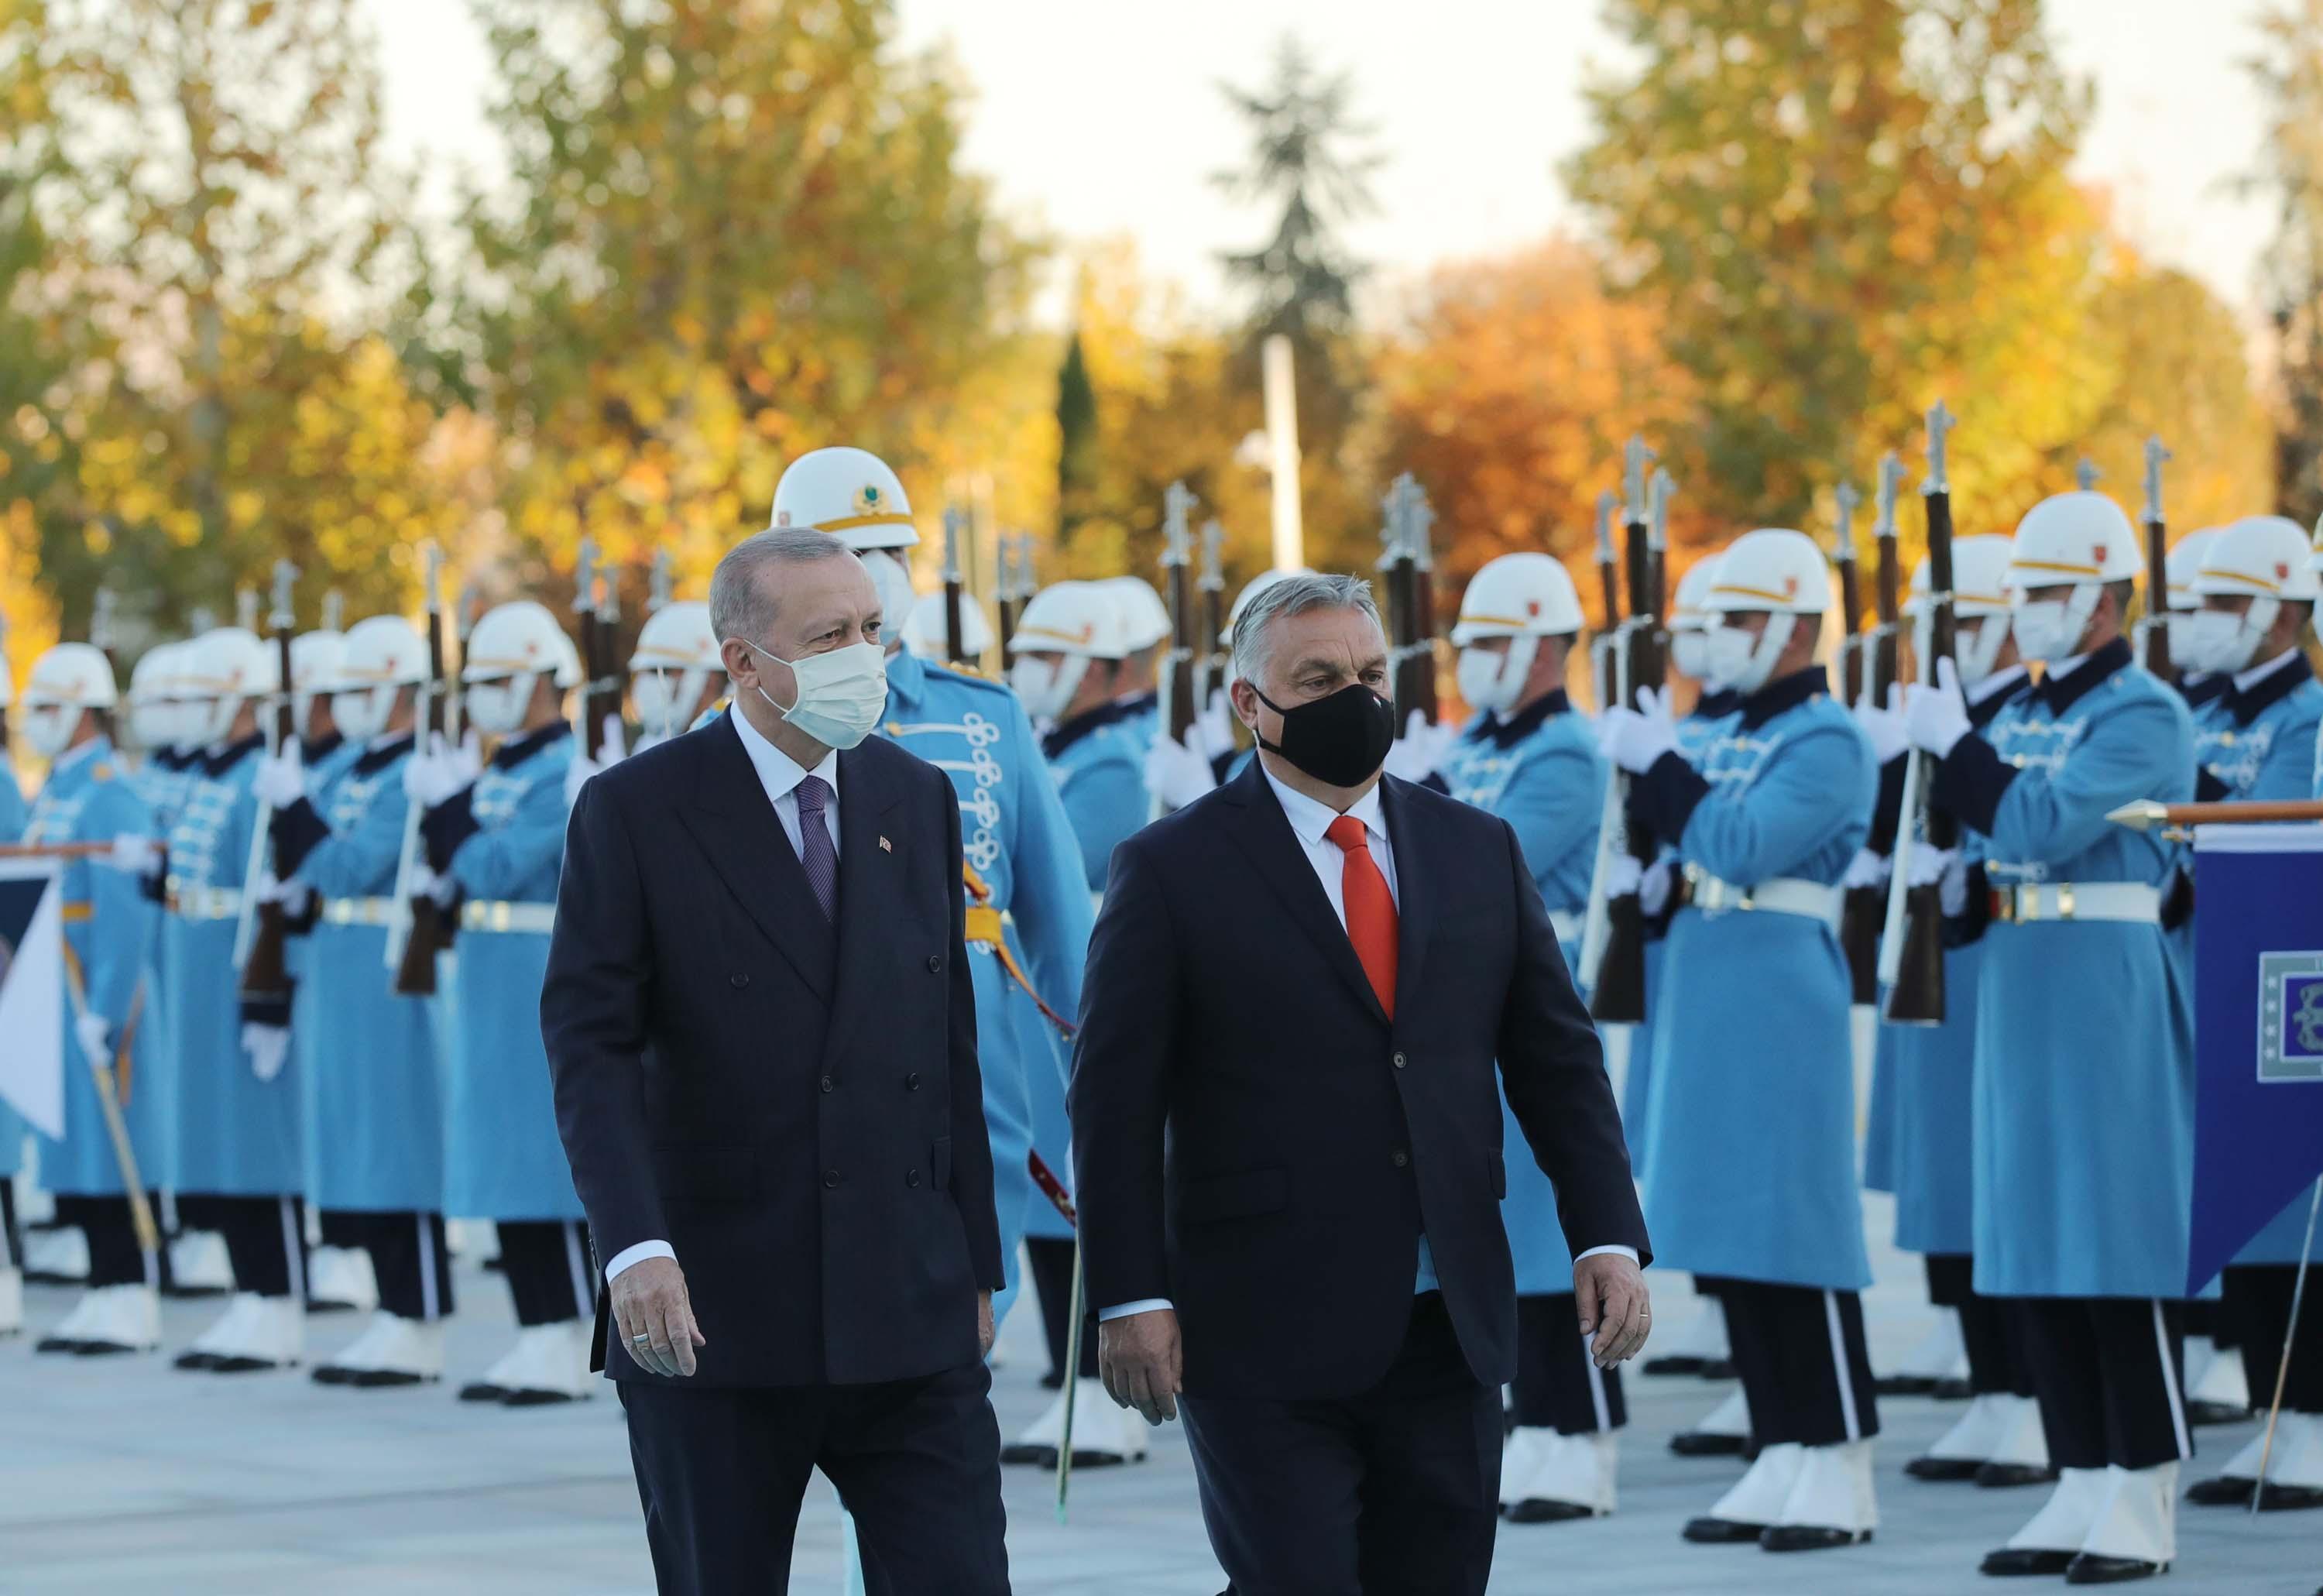 Macaristan Başbakanı, Türkiyeye ait tarihi eserleri Erdoğana iade etti